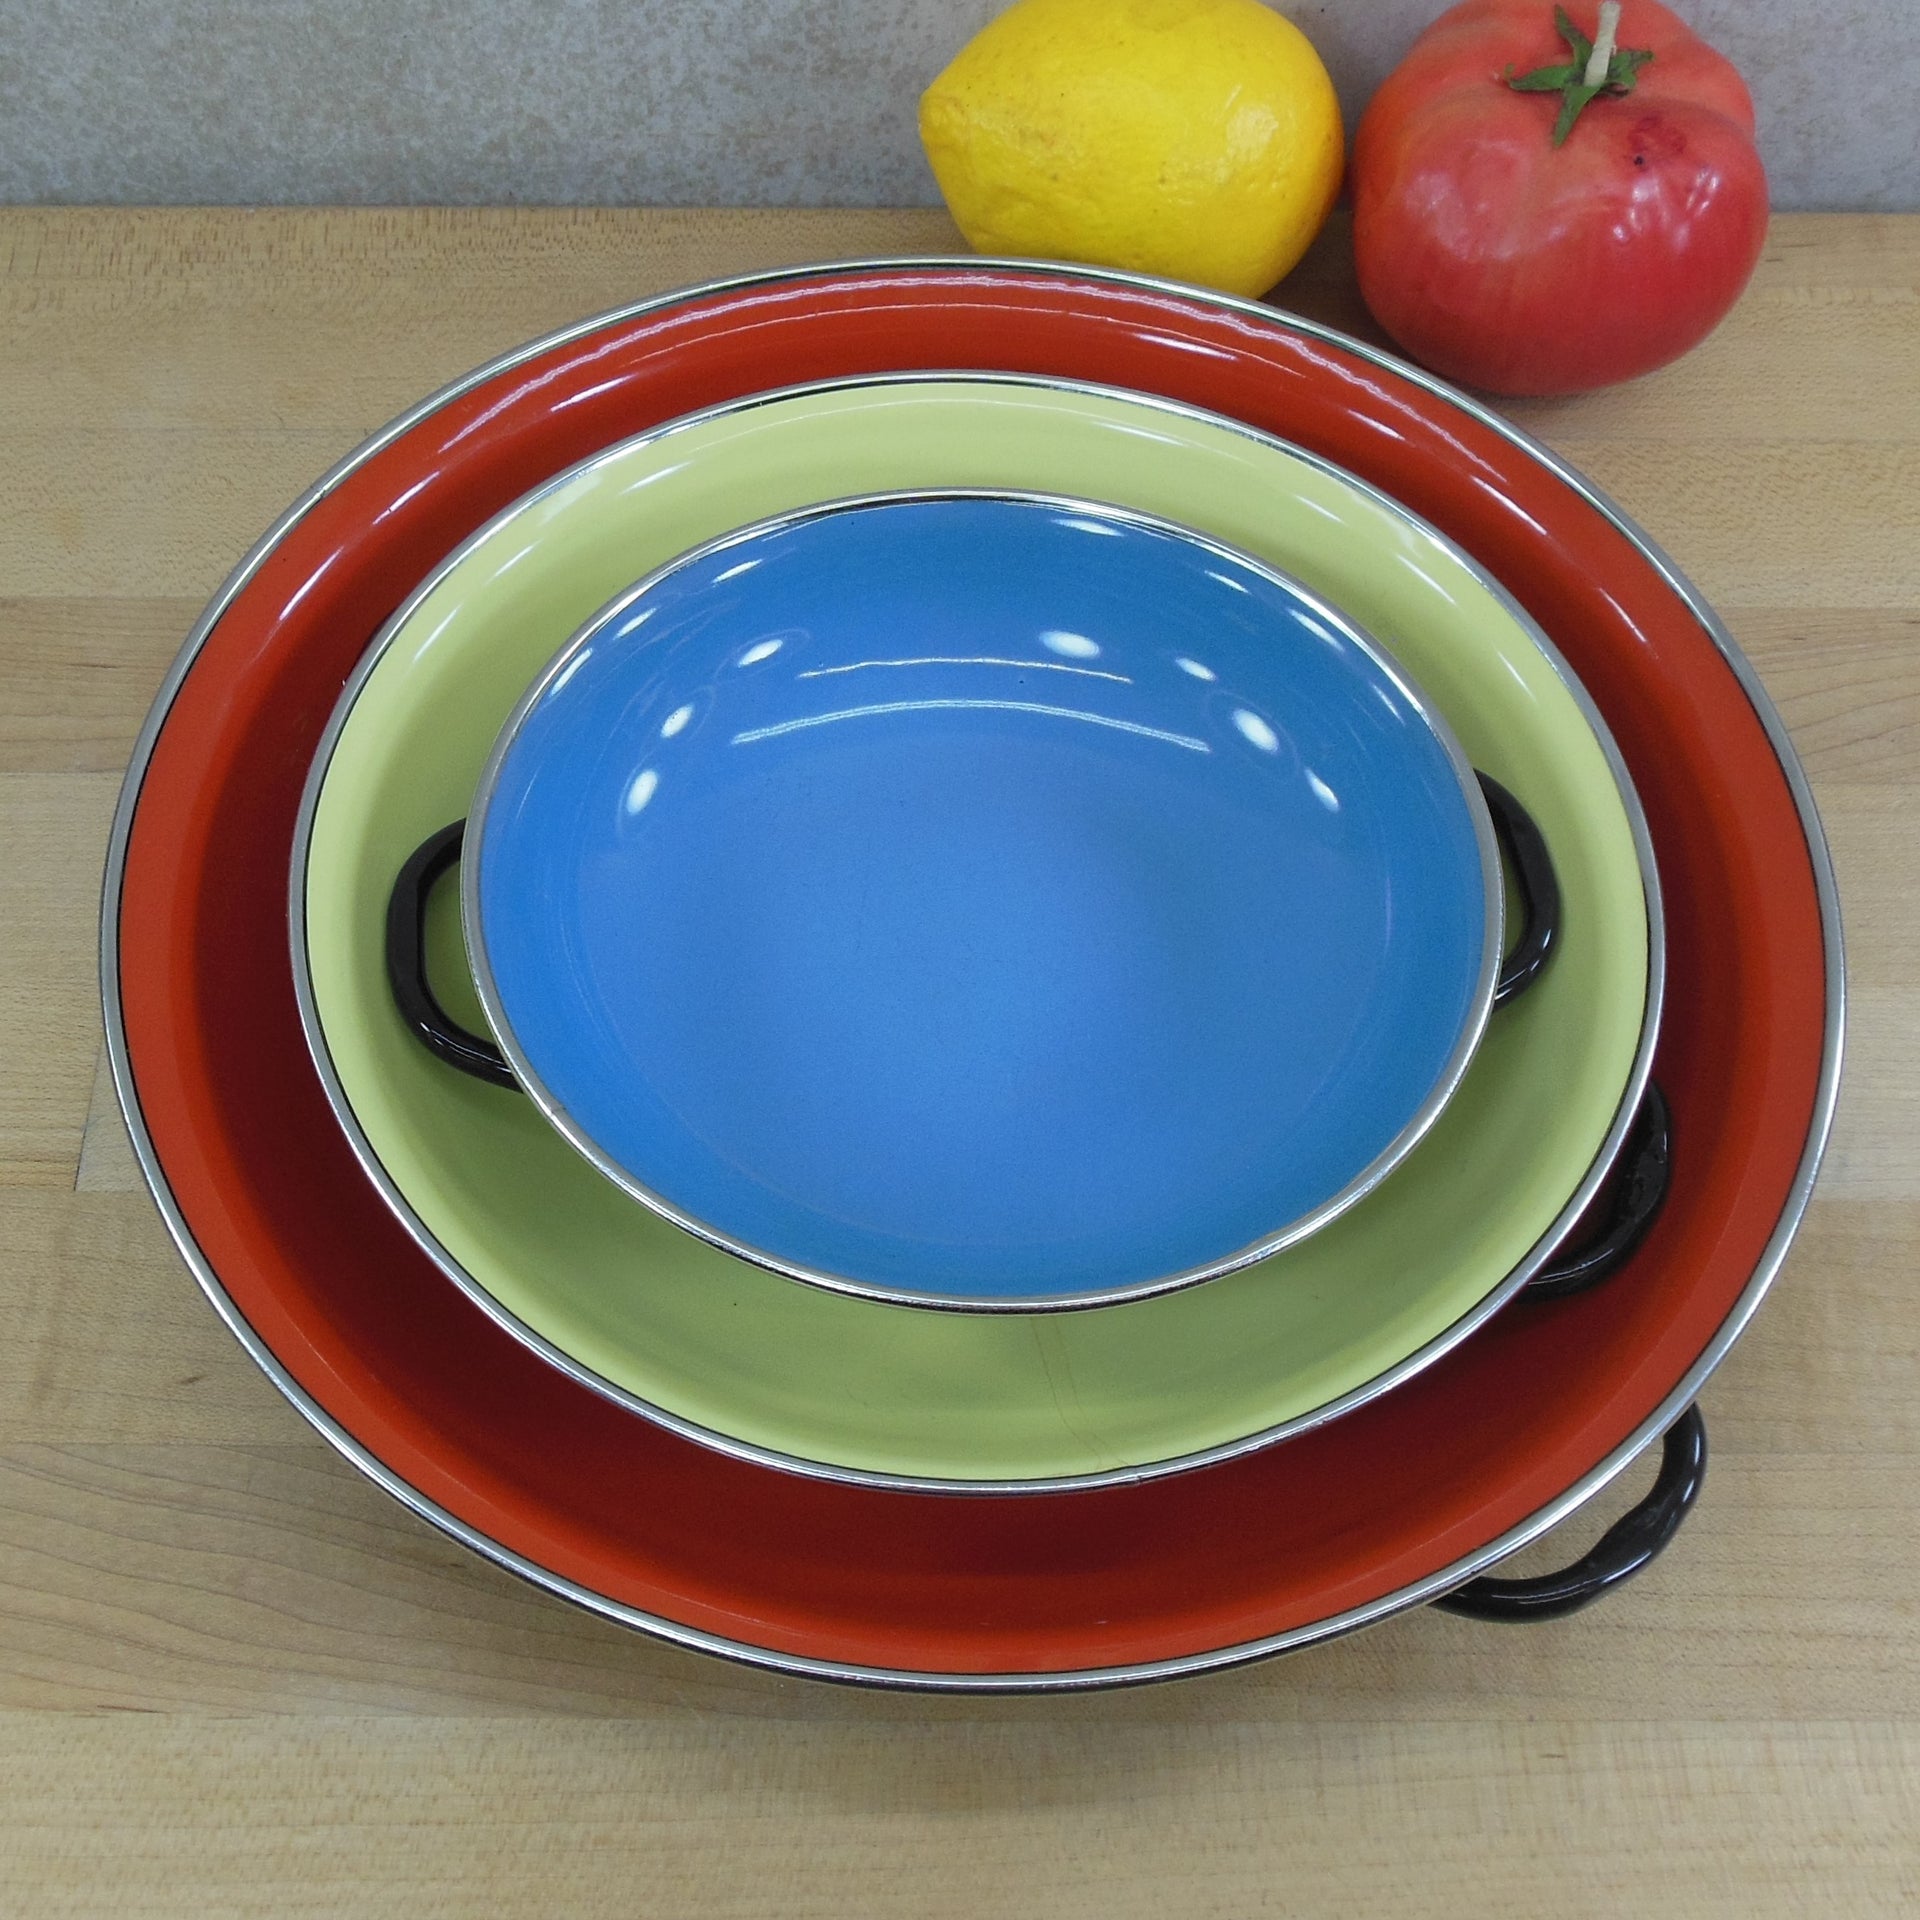 Vintage Enamel Pan Enamel Dish Set Of 3 Made In former Yugoslavia Red Blue  Yello